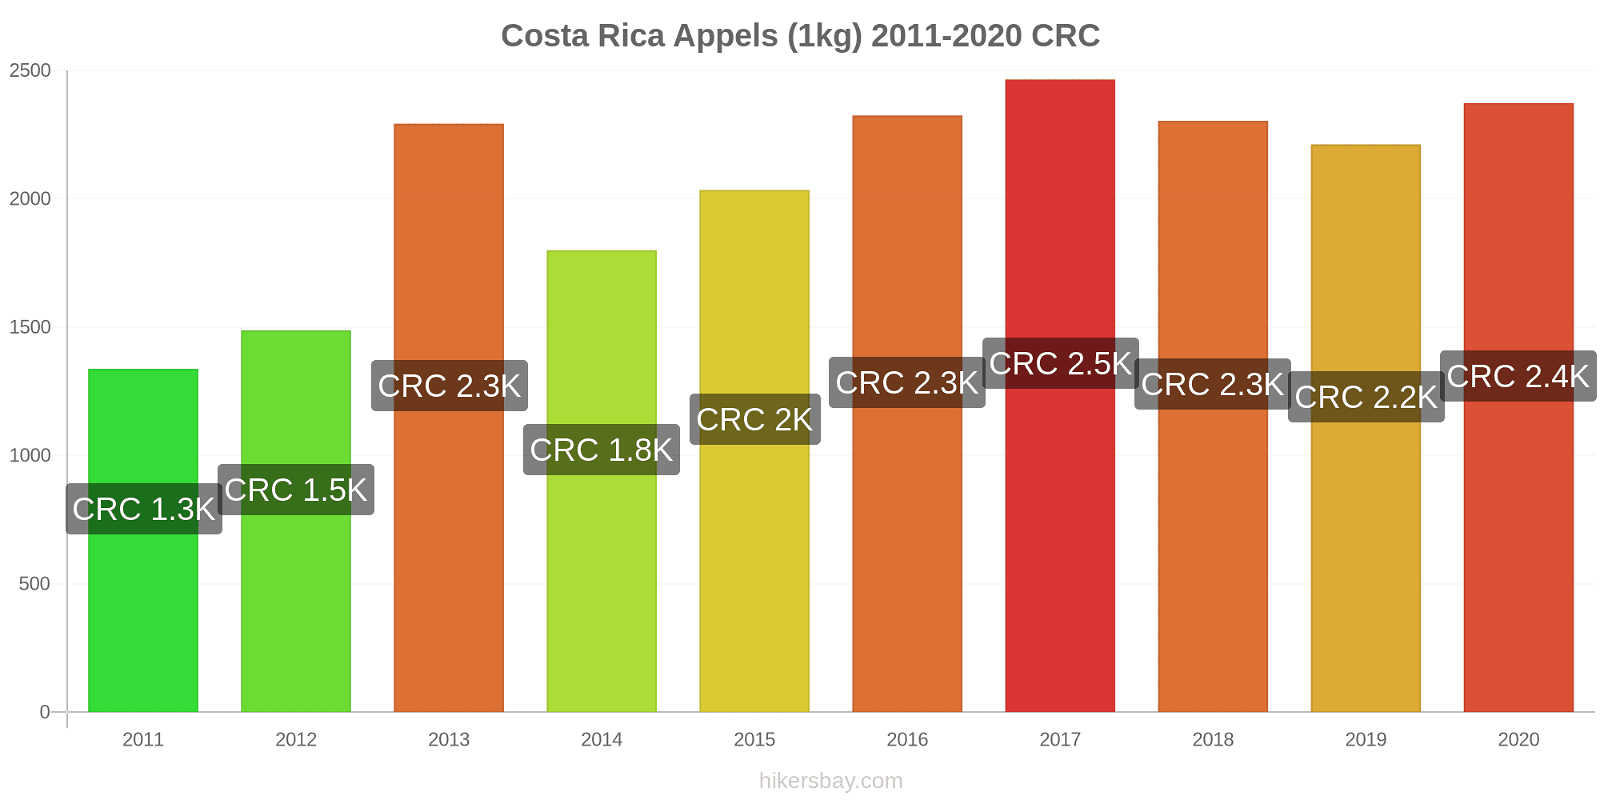 Costa Rica prijswijzigingen Appels (1kg) hikersbay.com